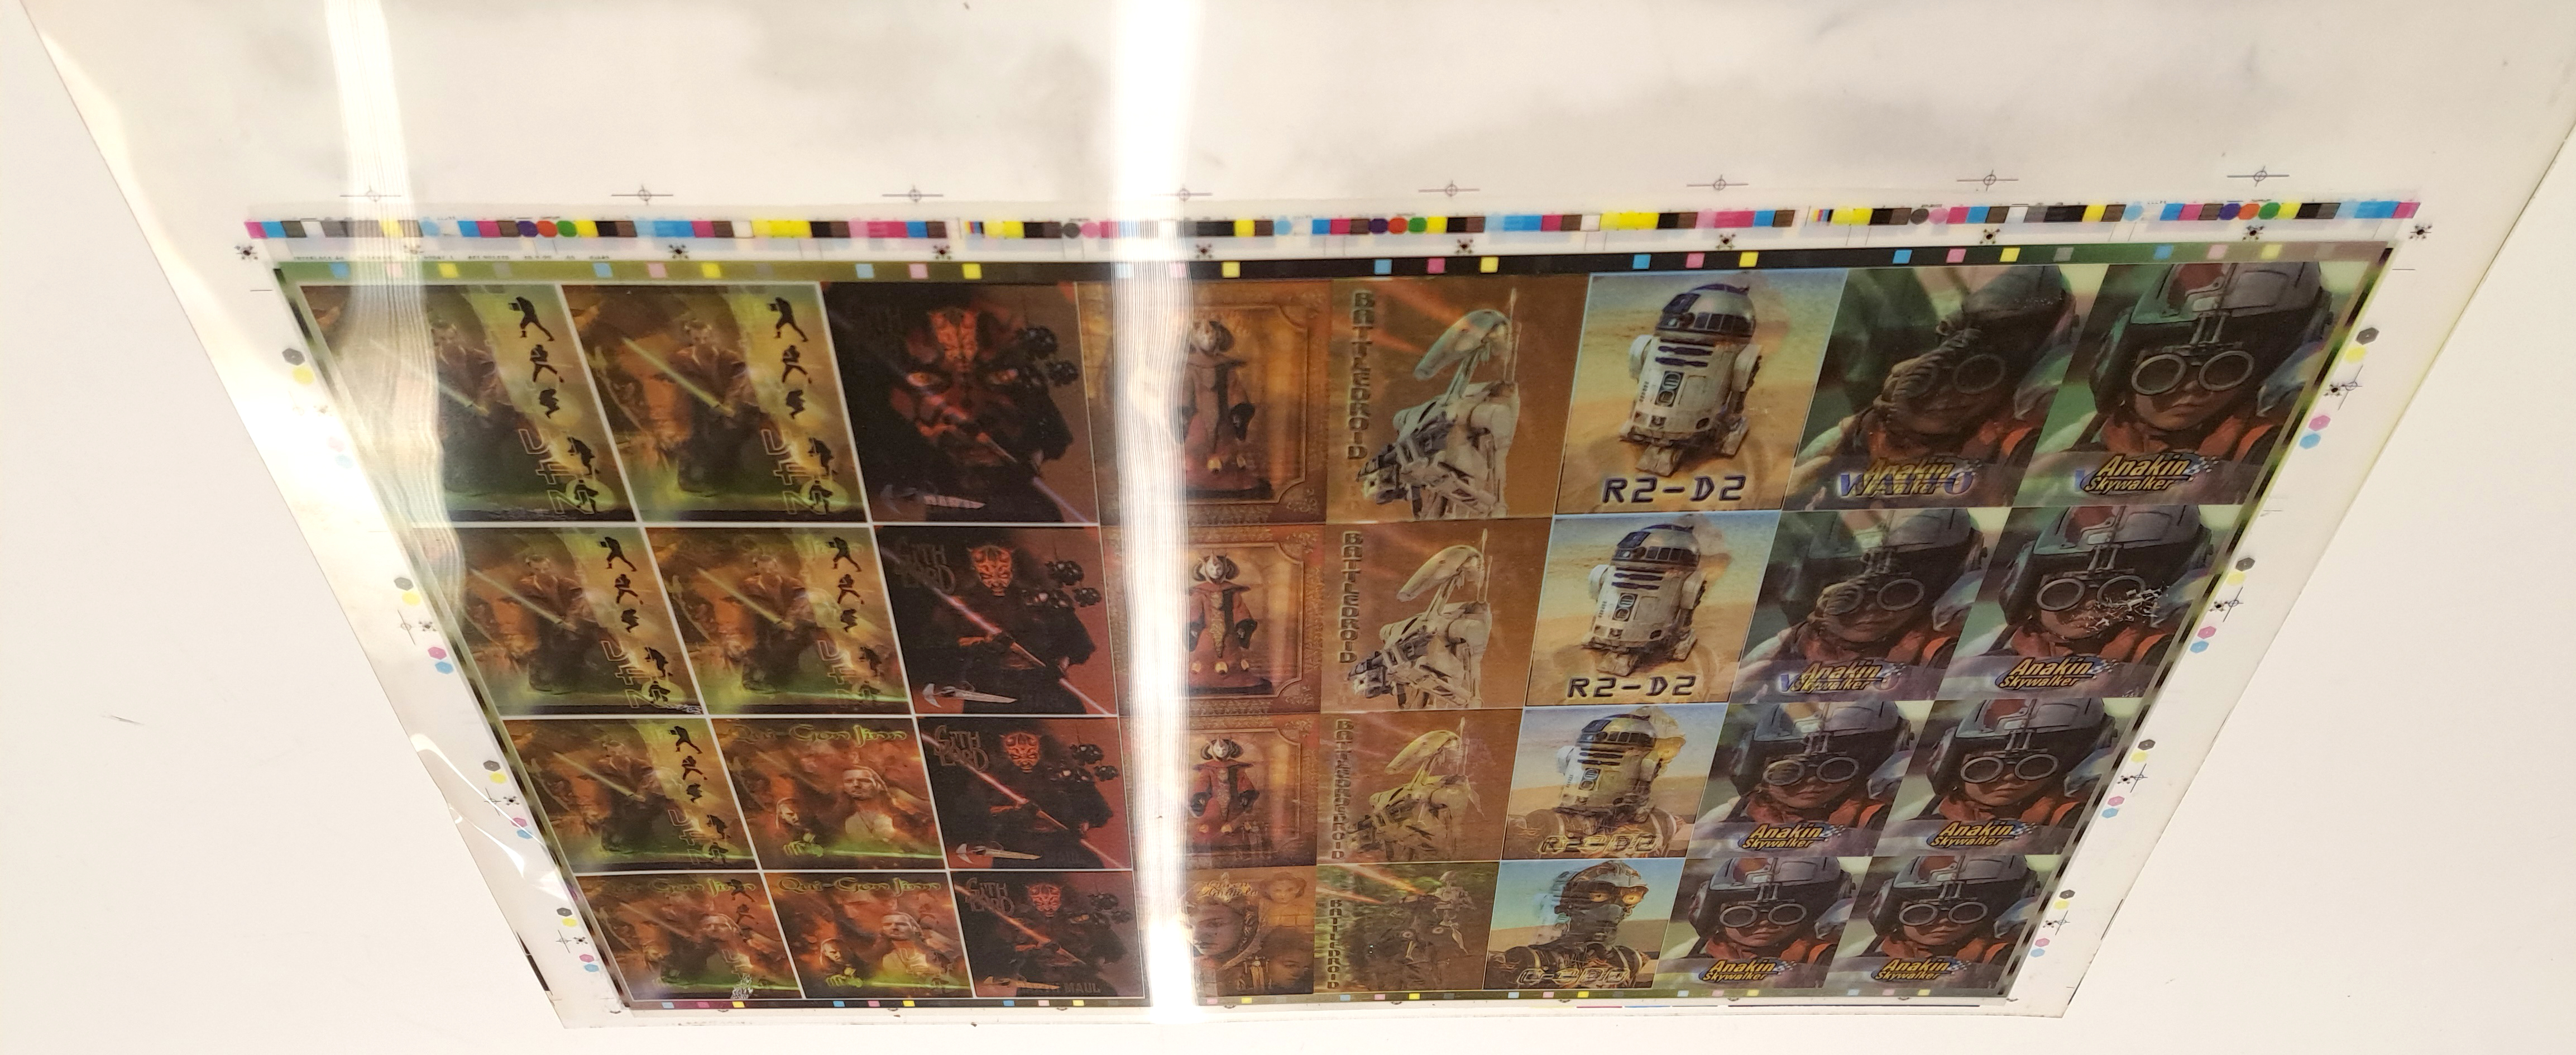 Interlaced 4D Ltd Star Wars Episode I 3D Flip Image Trading Cards Prototype Sheet. - Image 2 of 3